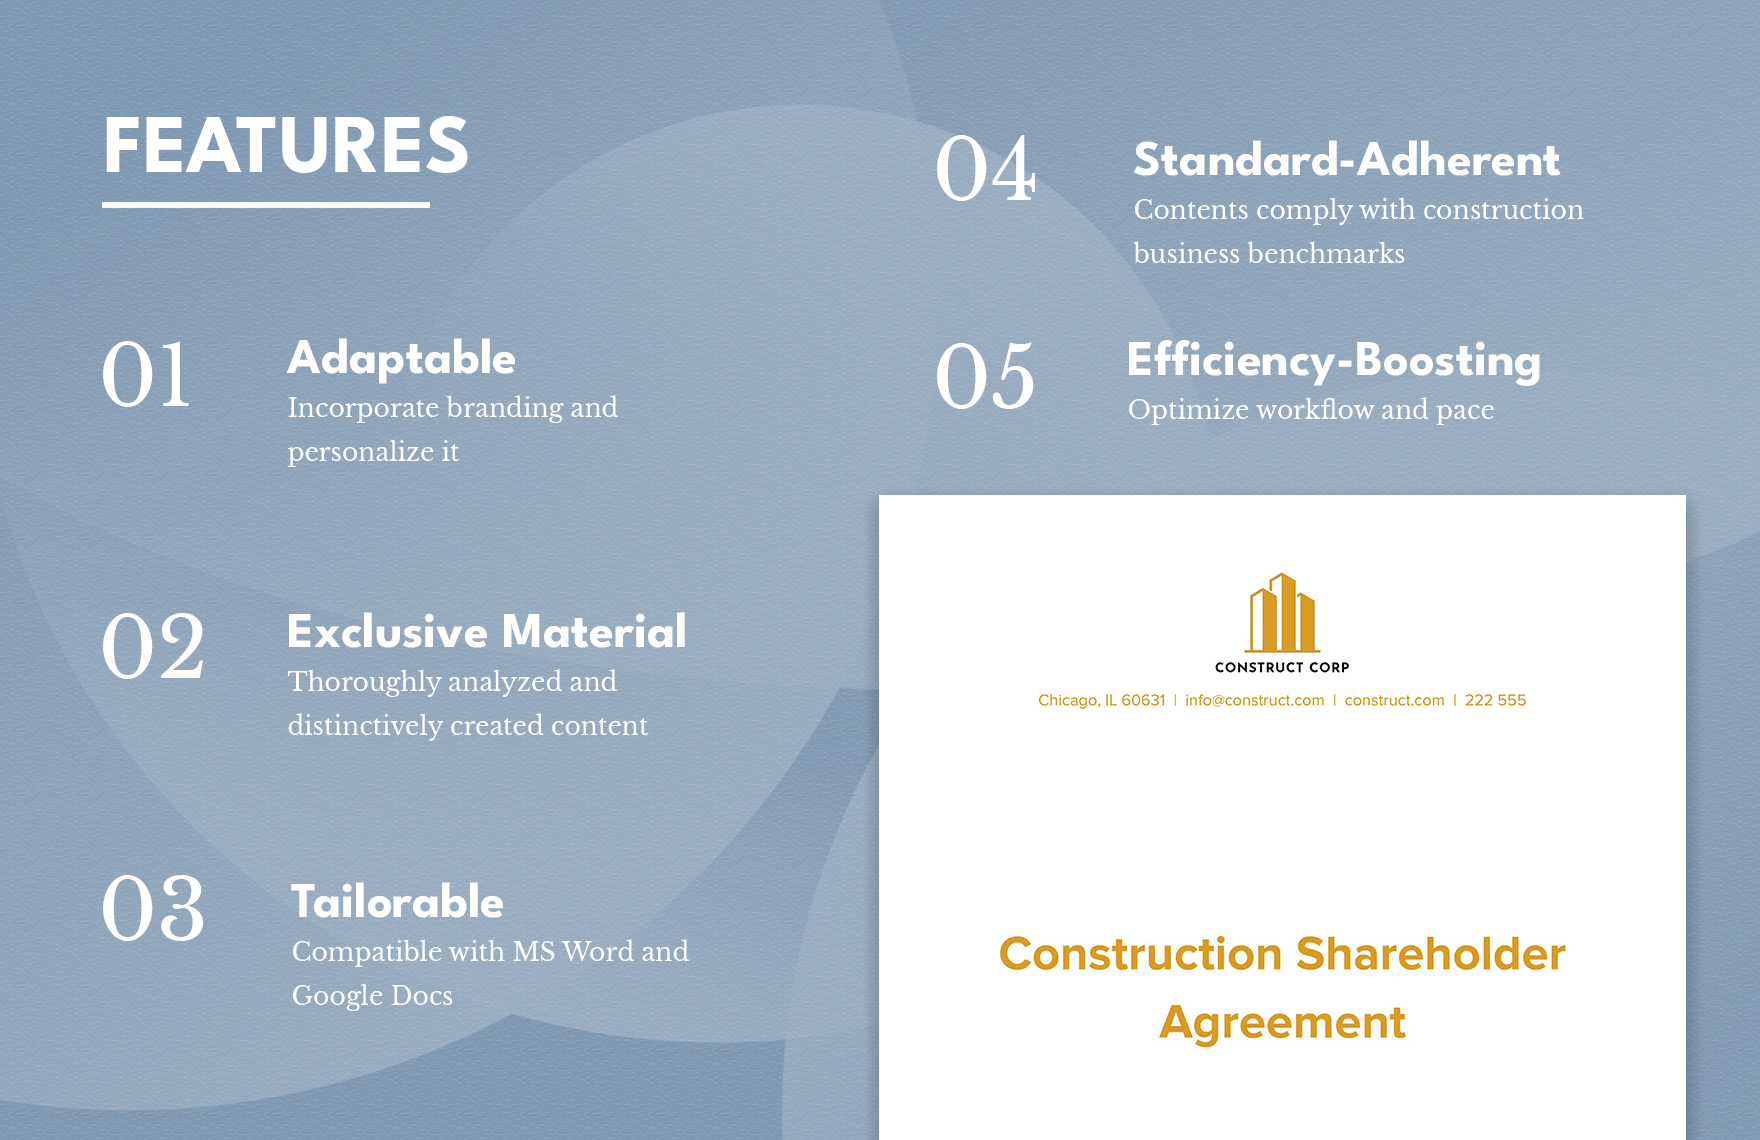 Construction Shareholder Agreement